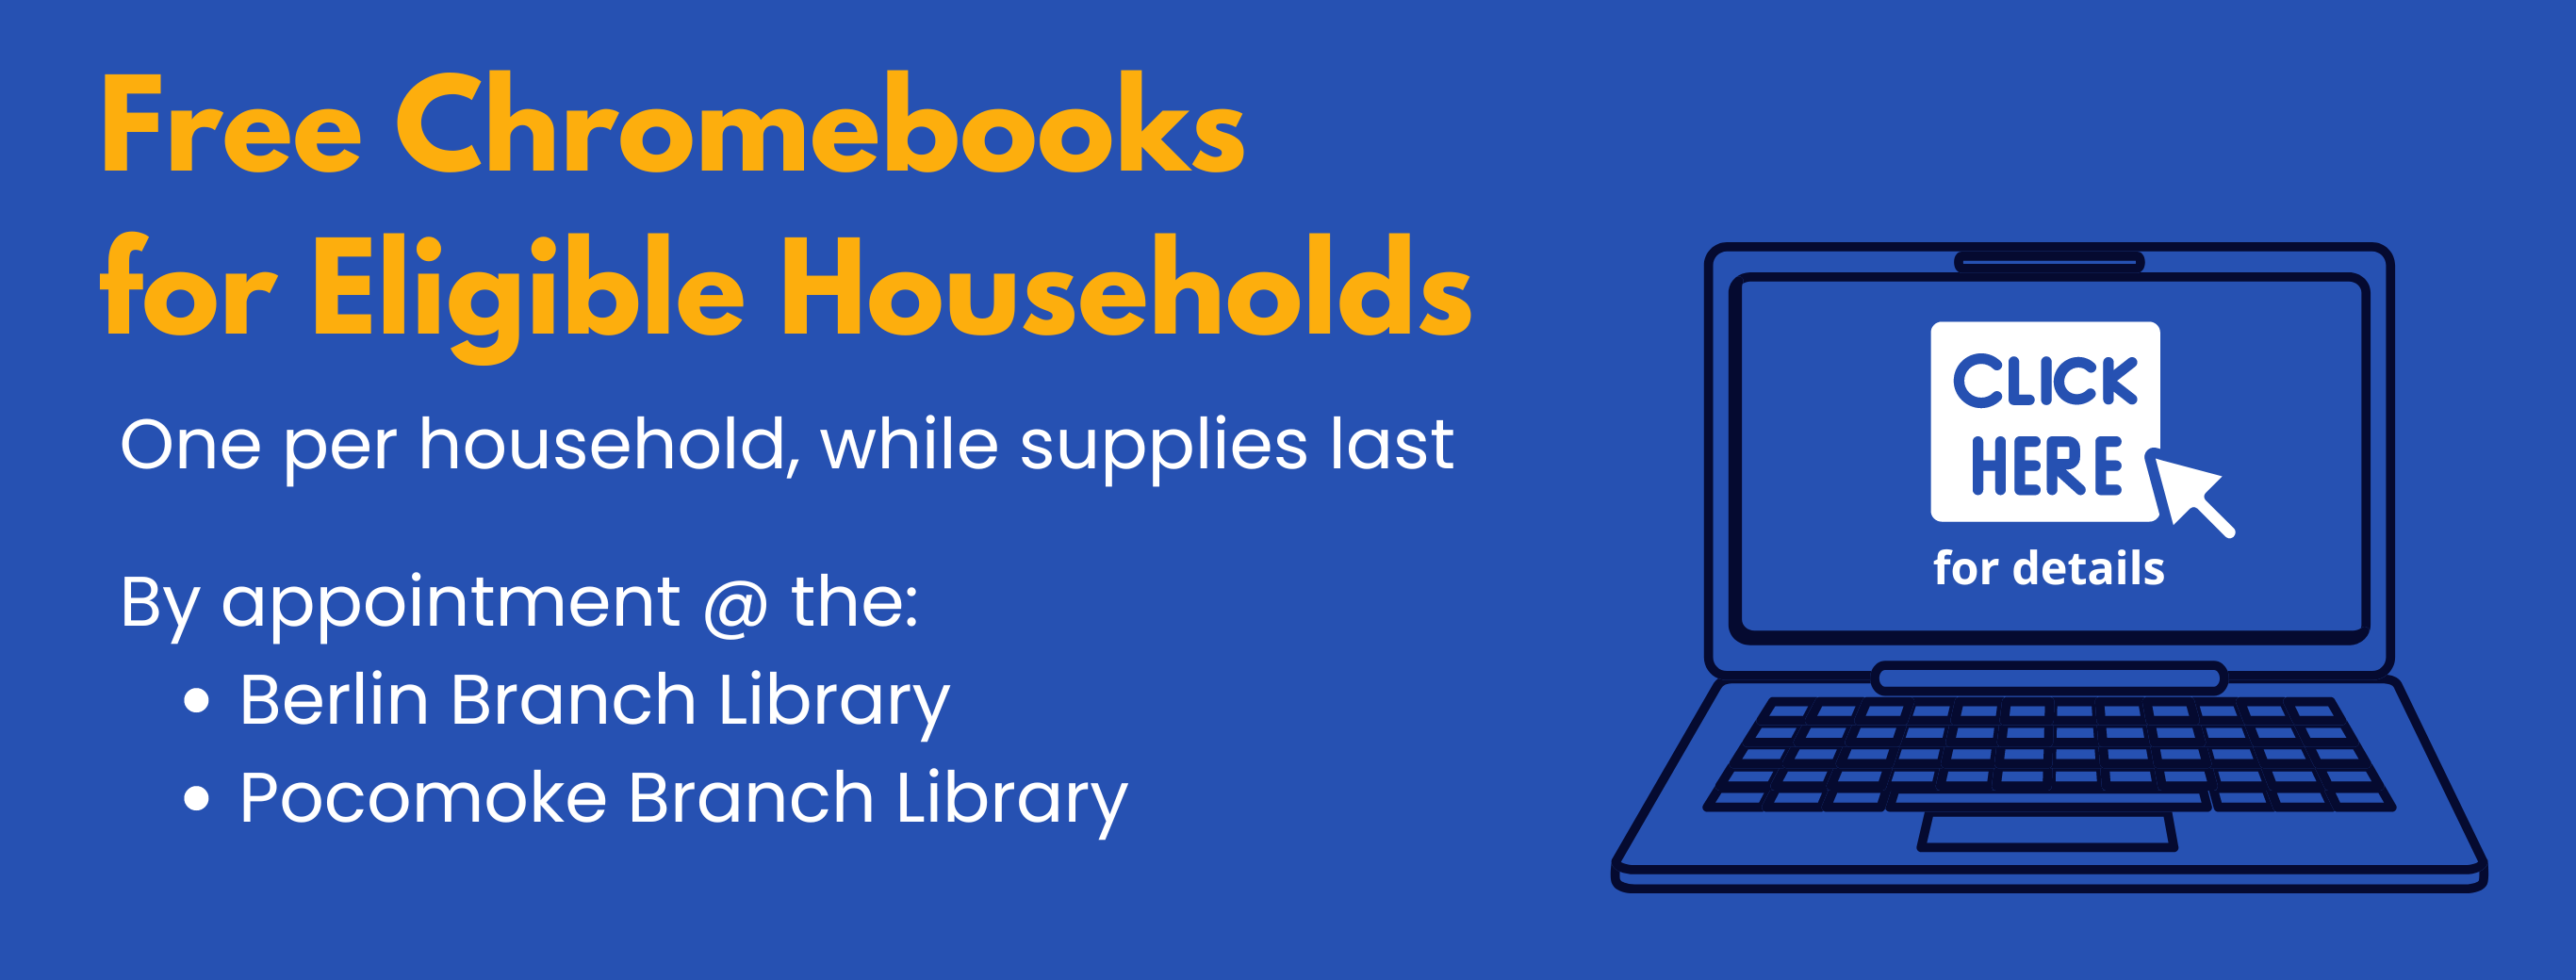 Free Chromebooks for Eligible Households